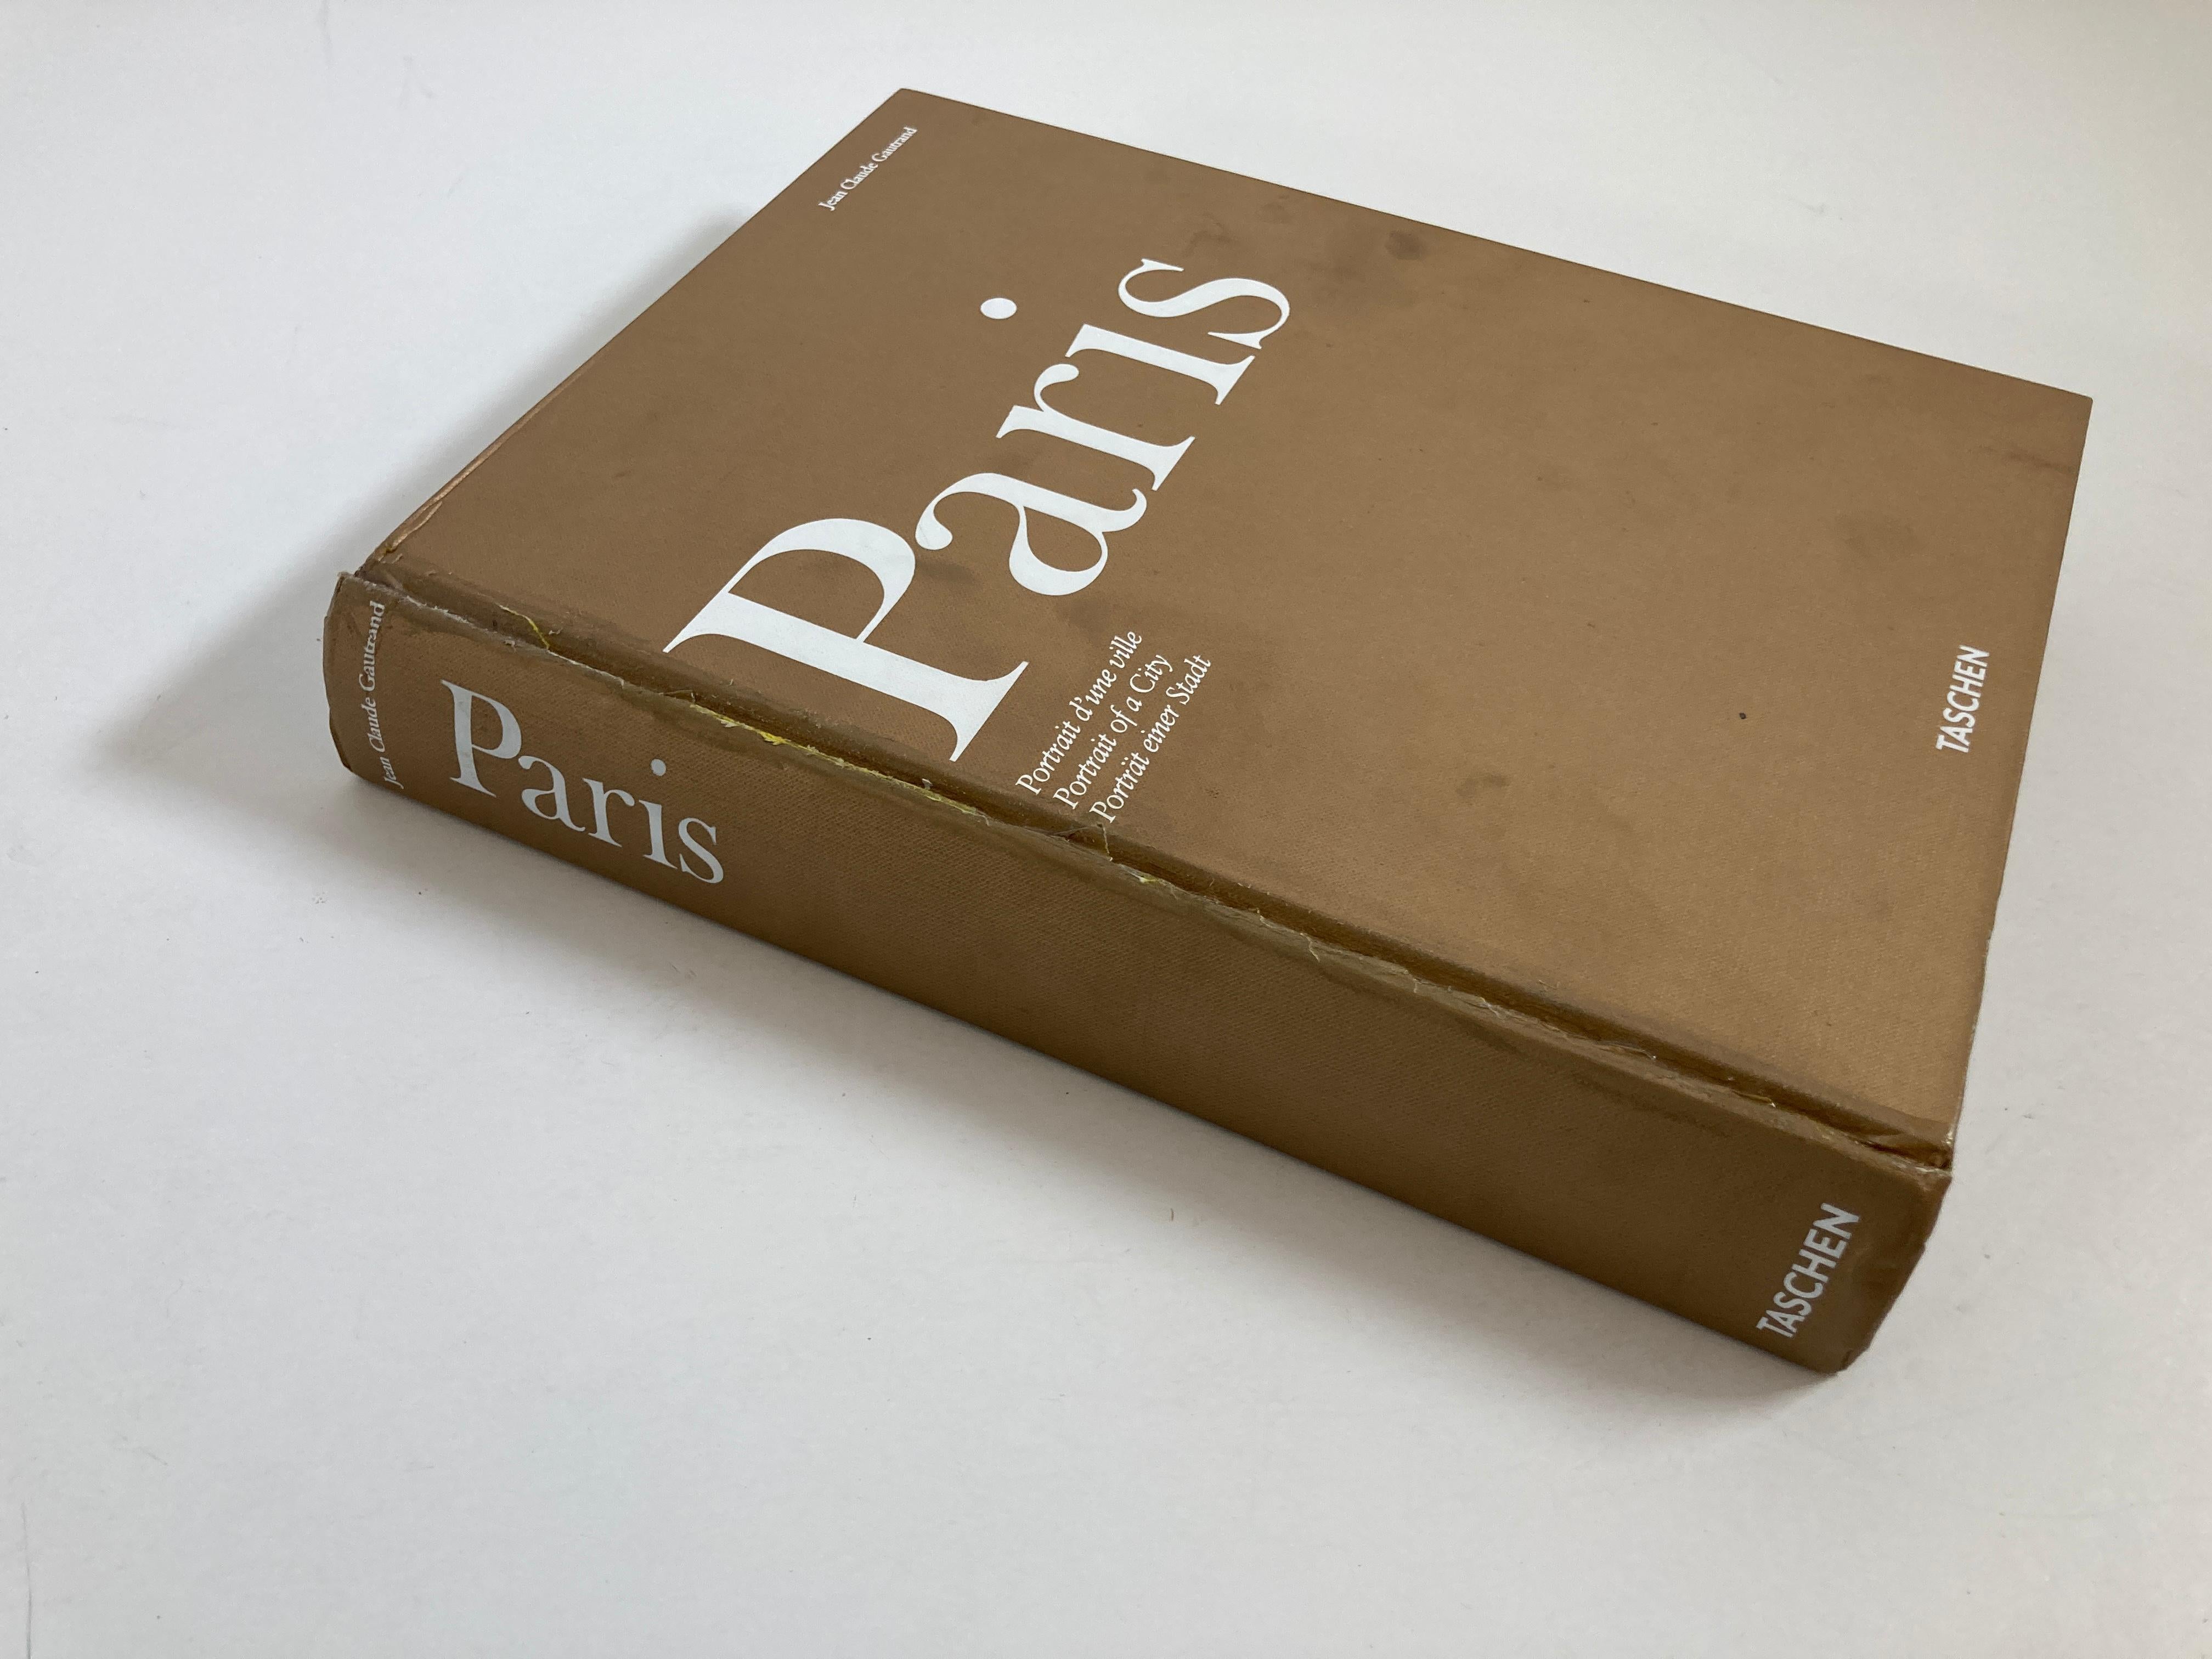 taschen paris book